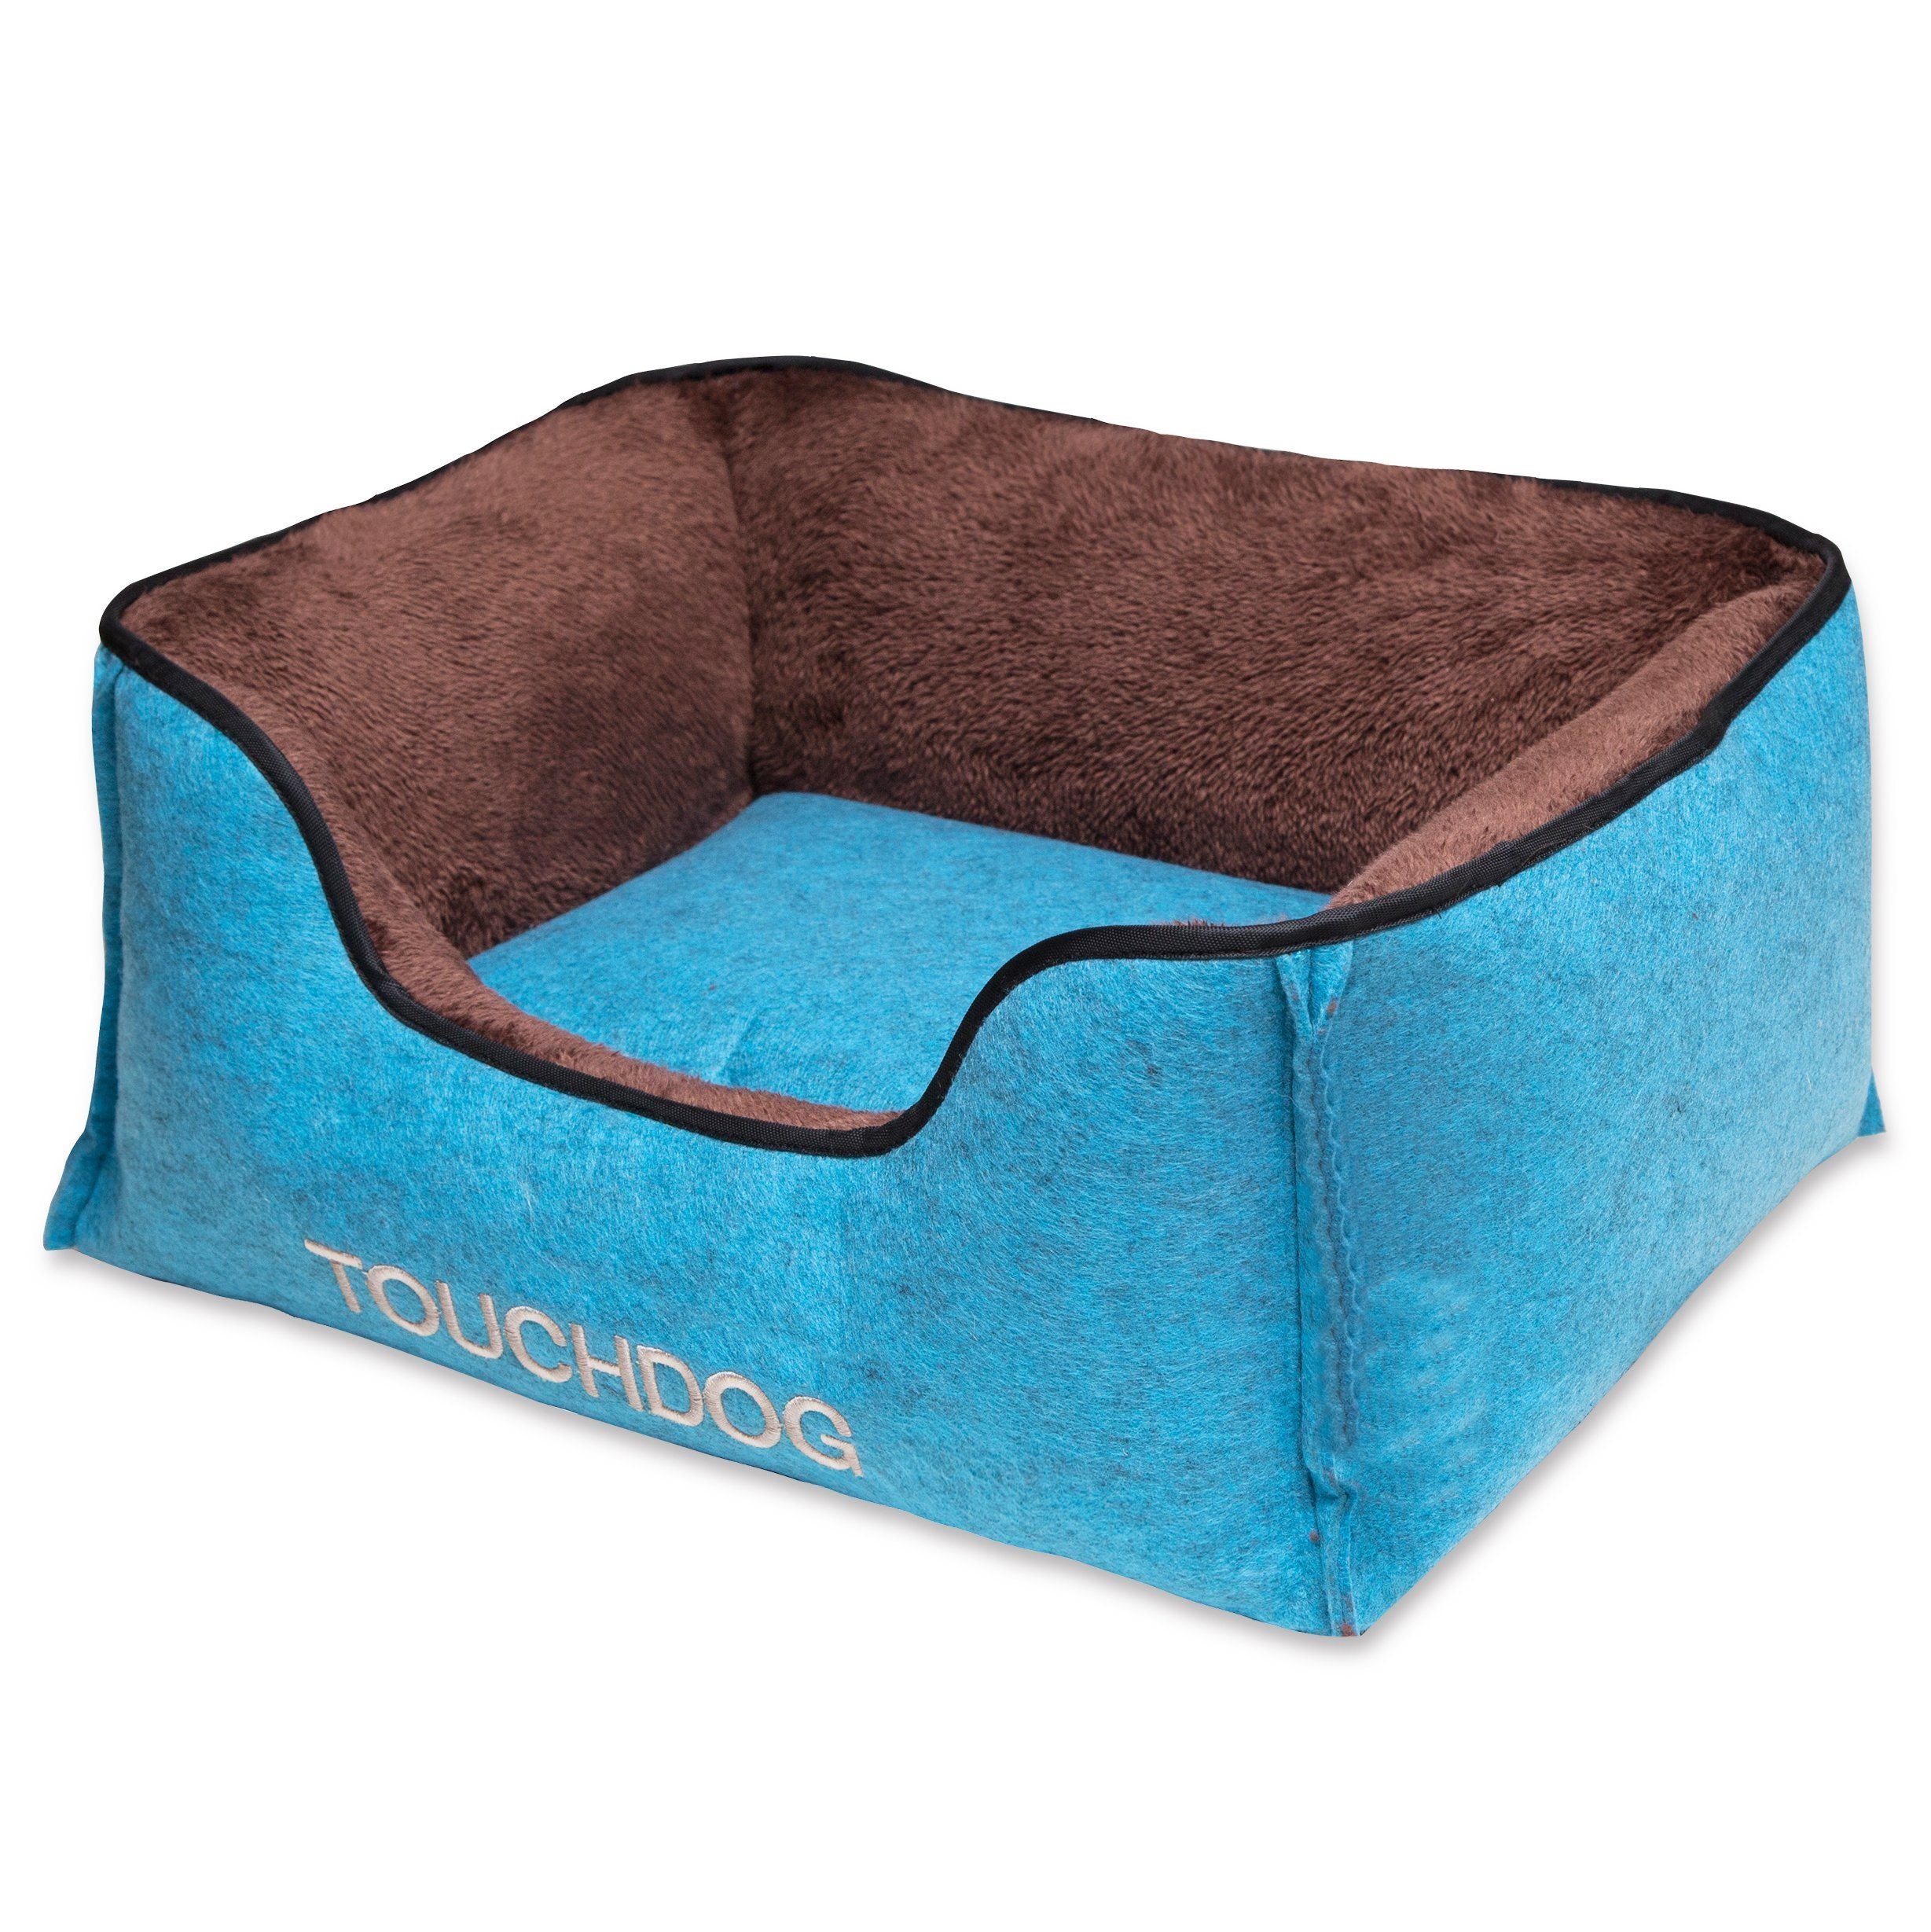 Touchdog 'Felter Shelter' Luxury Premium Designer Dog Bed Medium Blue